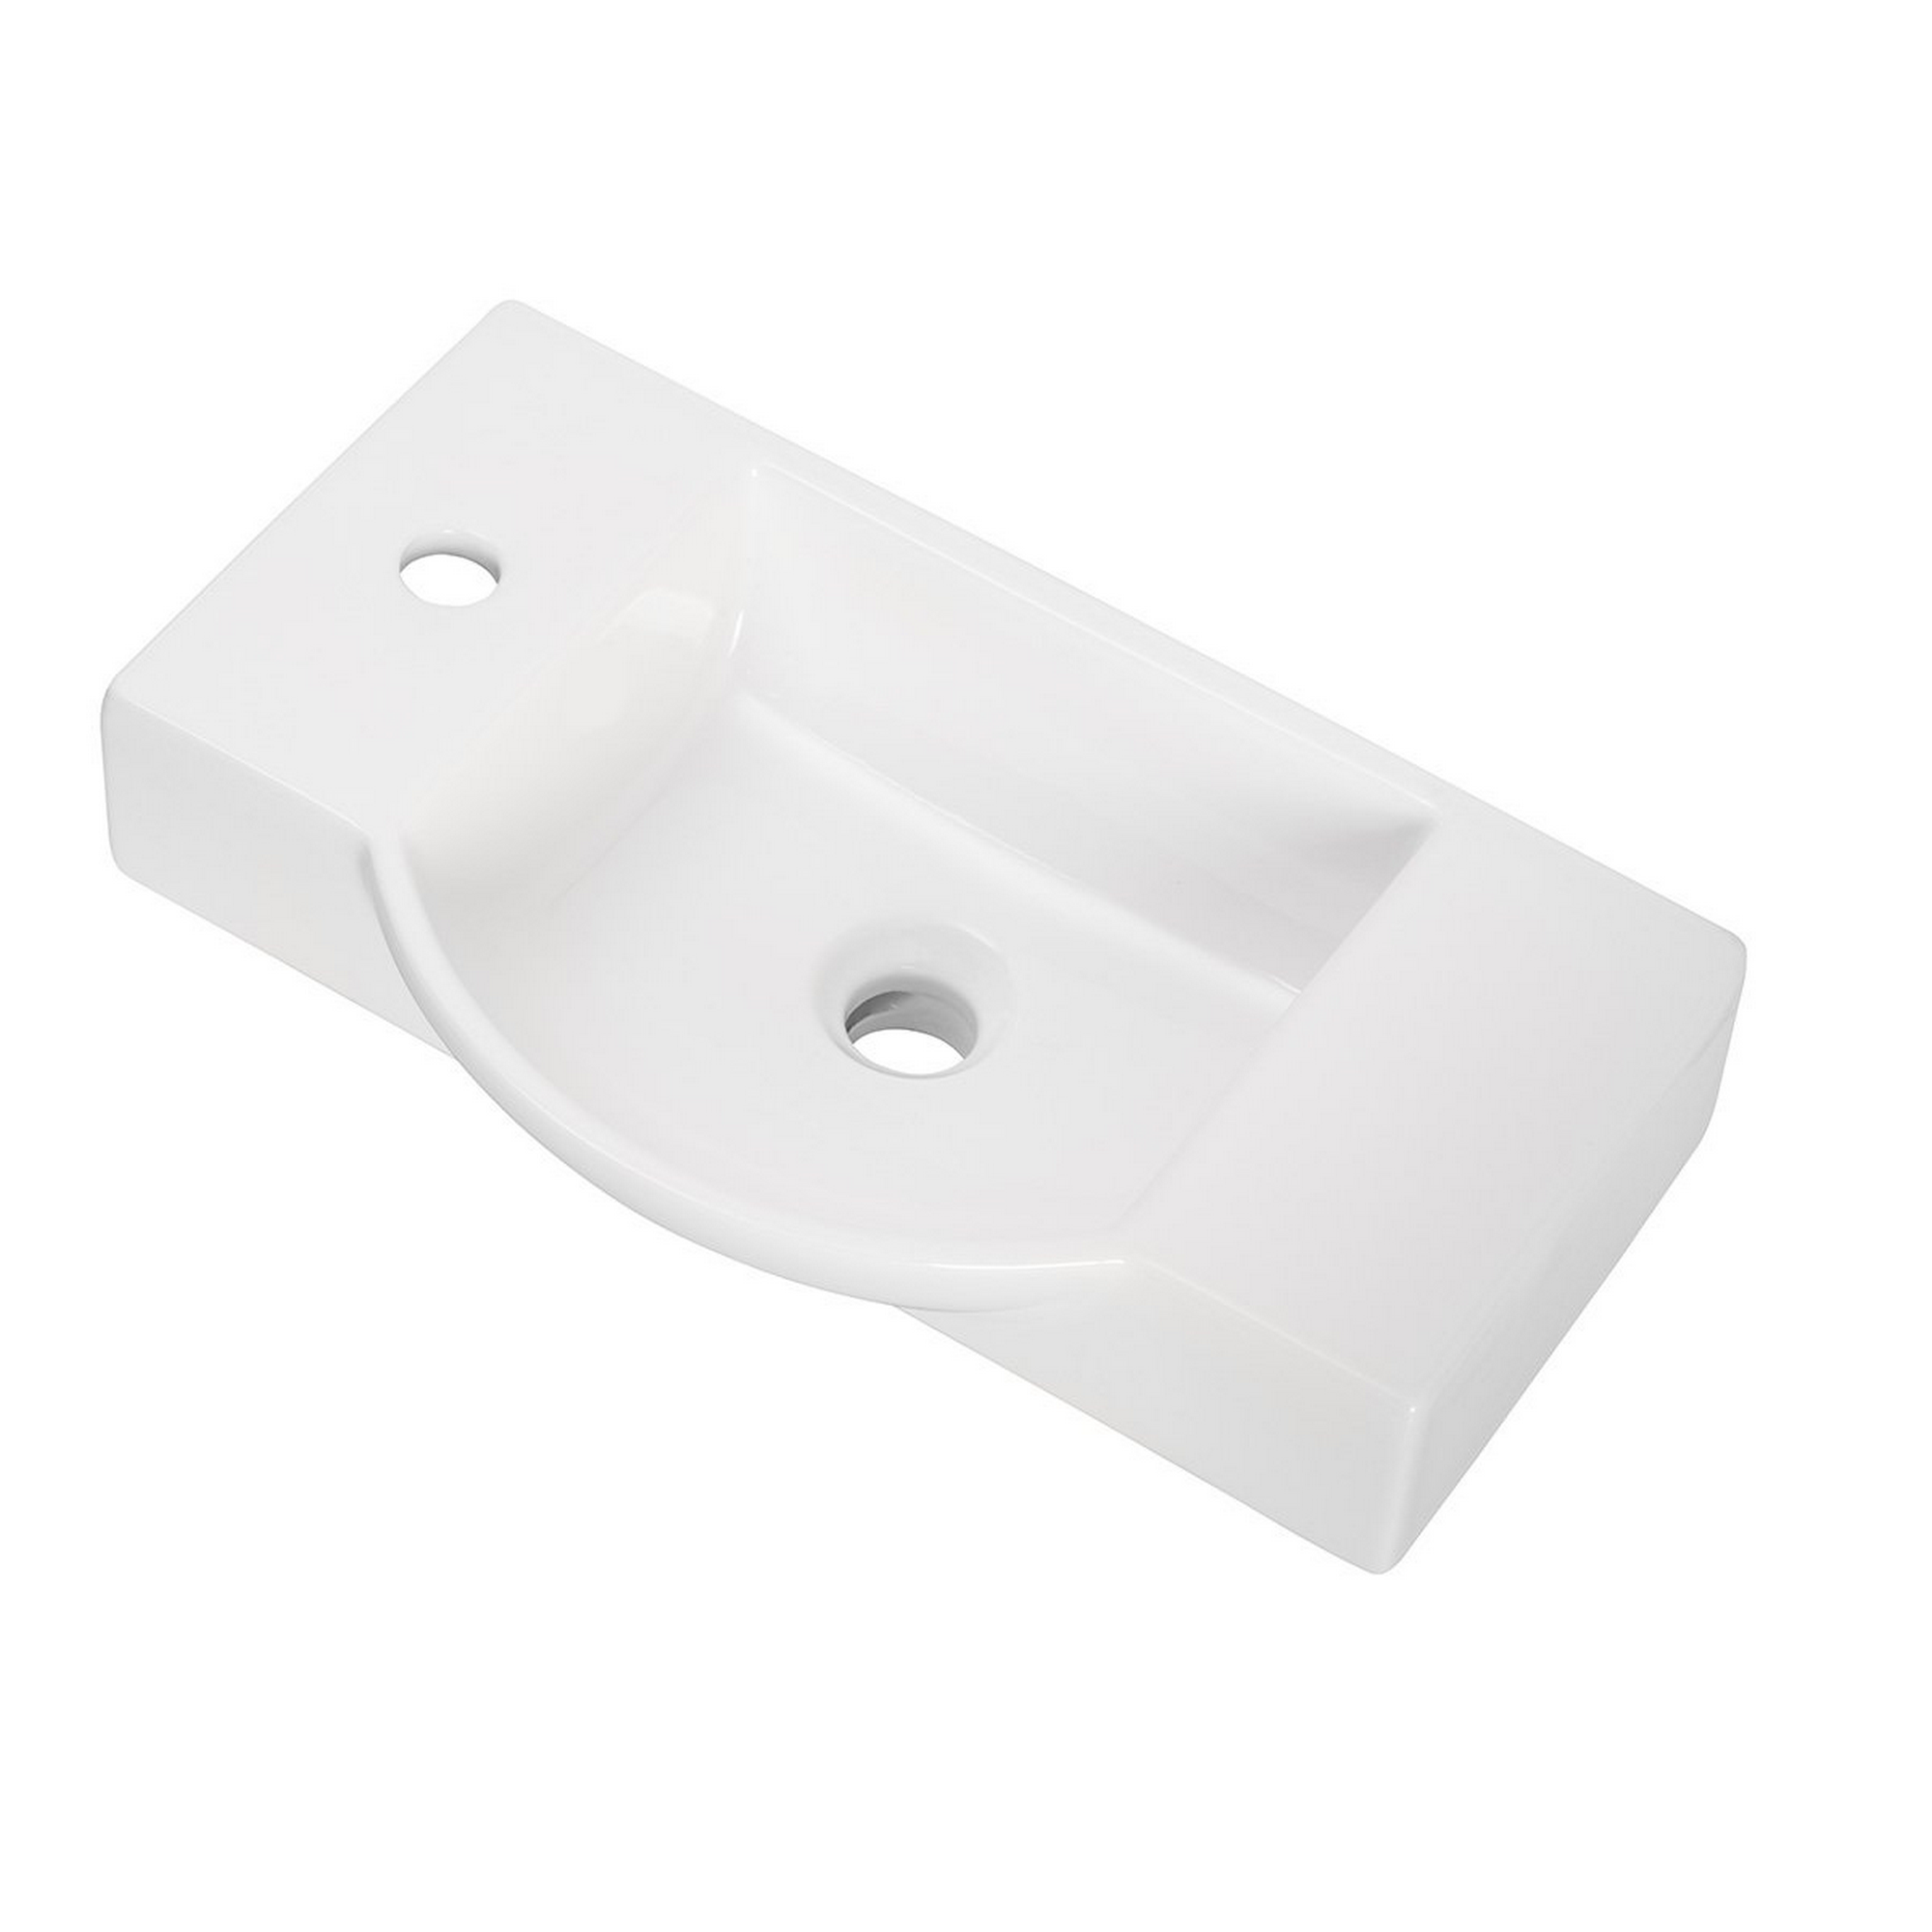 Waschbecken 'SBC' weiß 54,5 x 14,5 x 31,7 cm für Gäste-WC + product picture